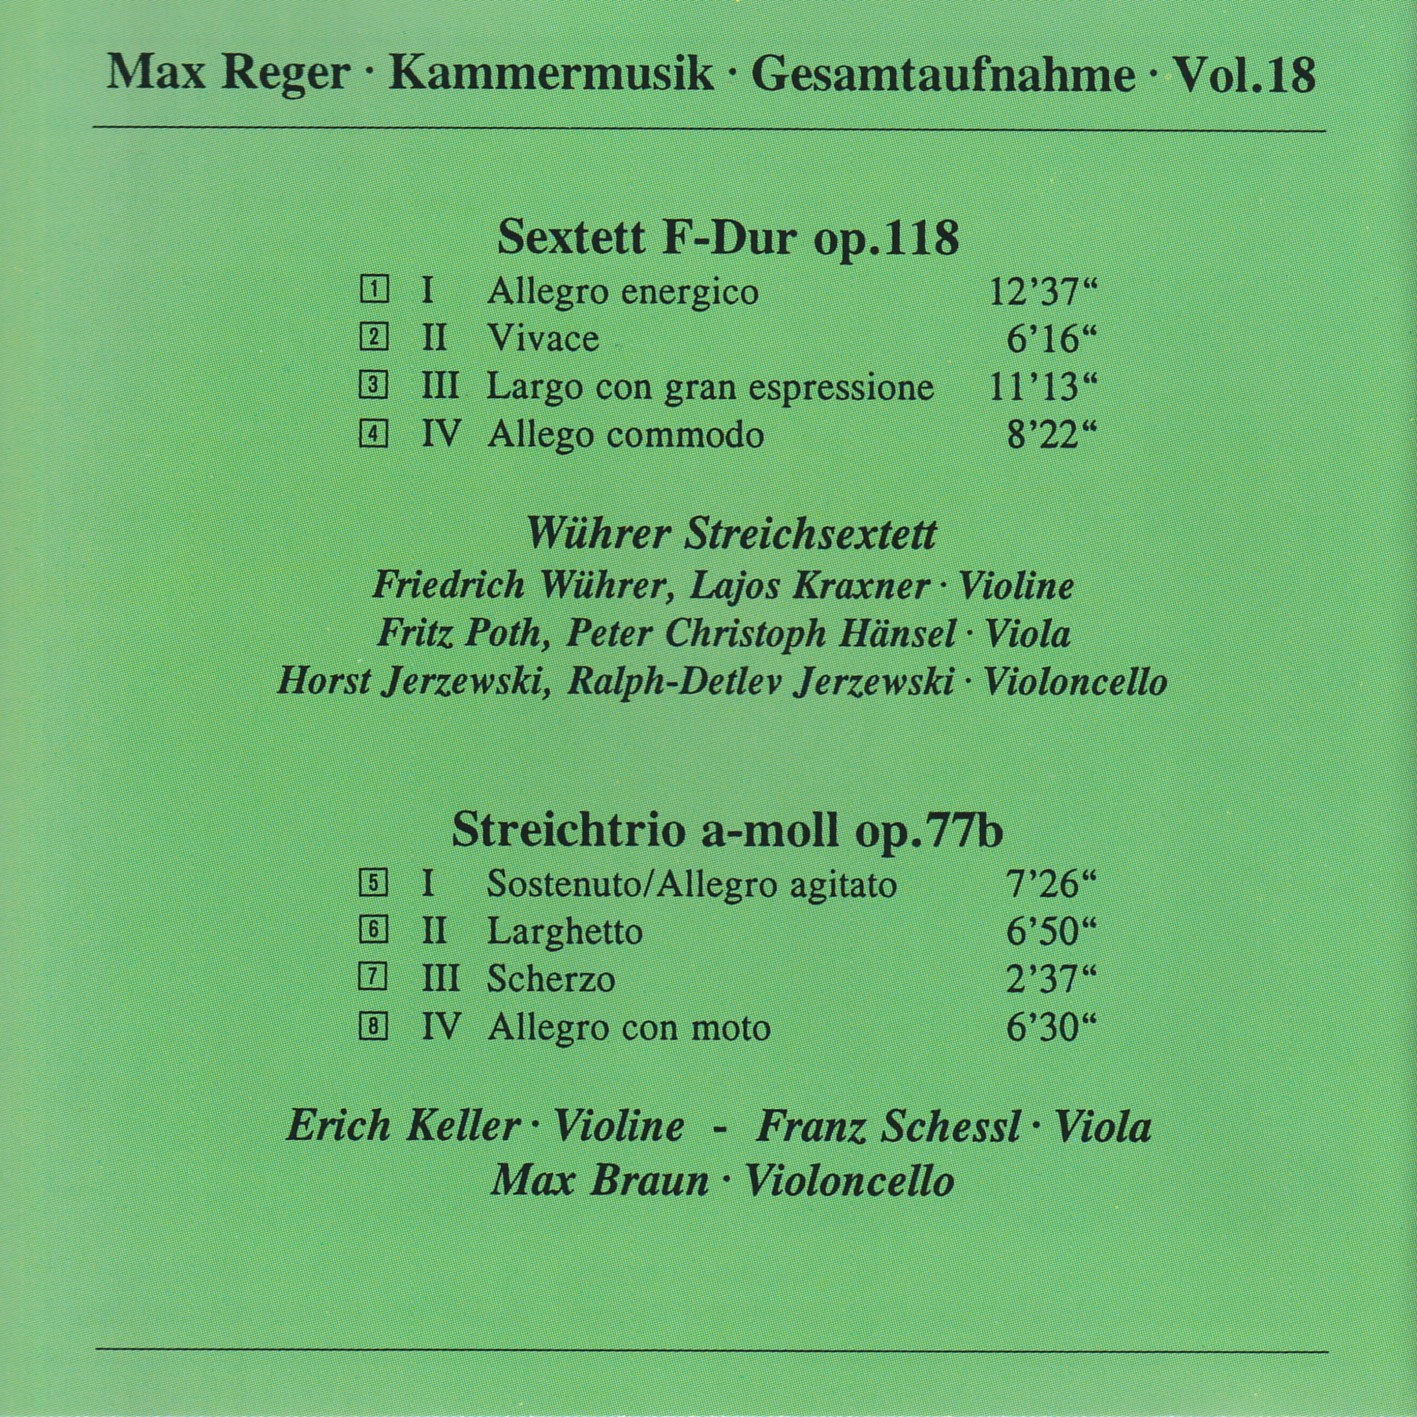 Max Reger - Kammermusik komplett Vol. 18